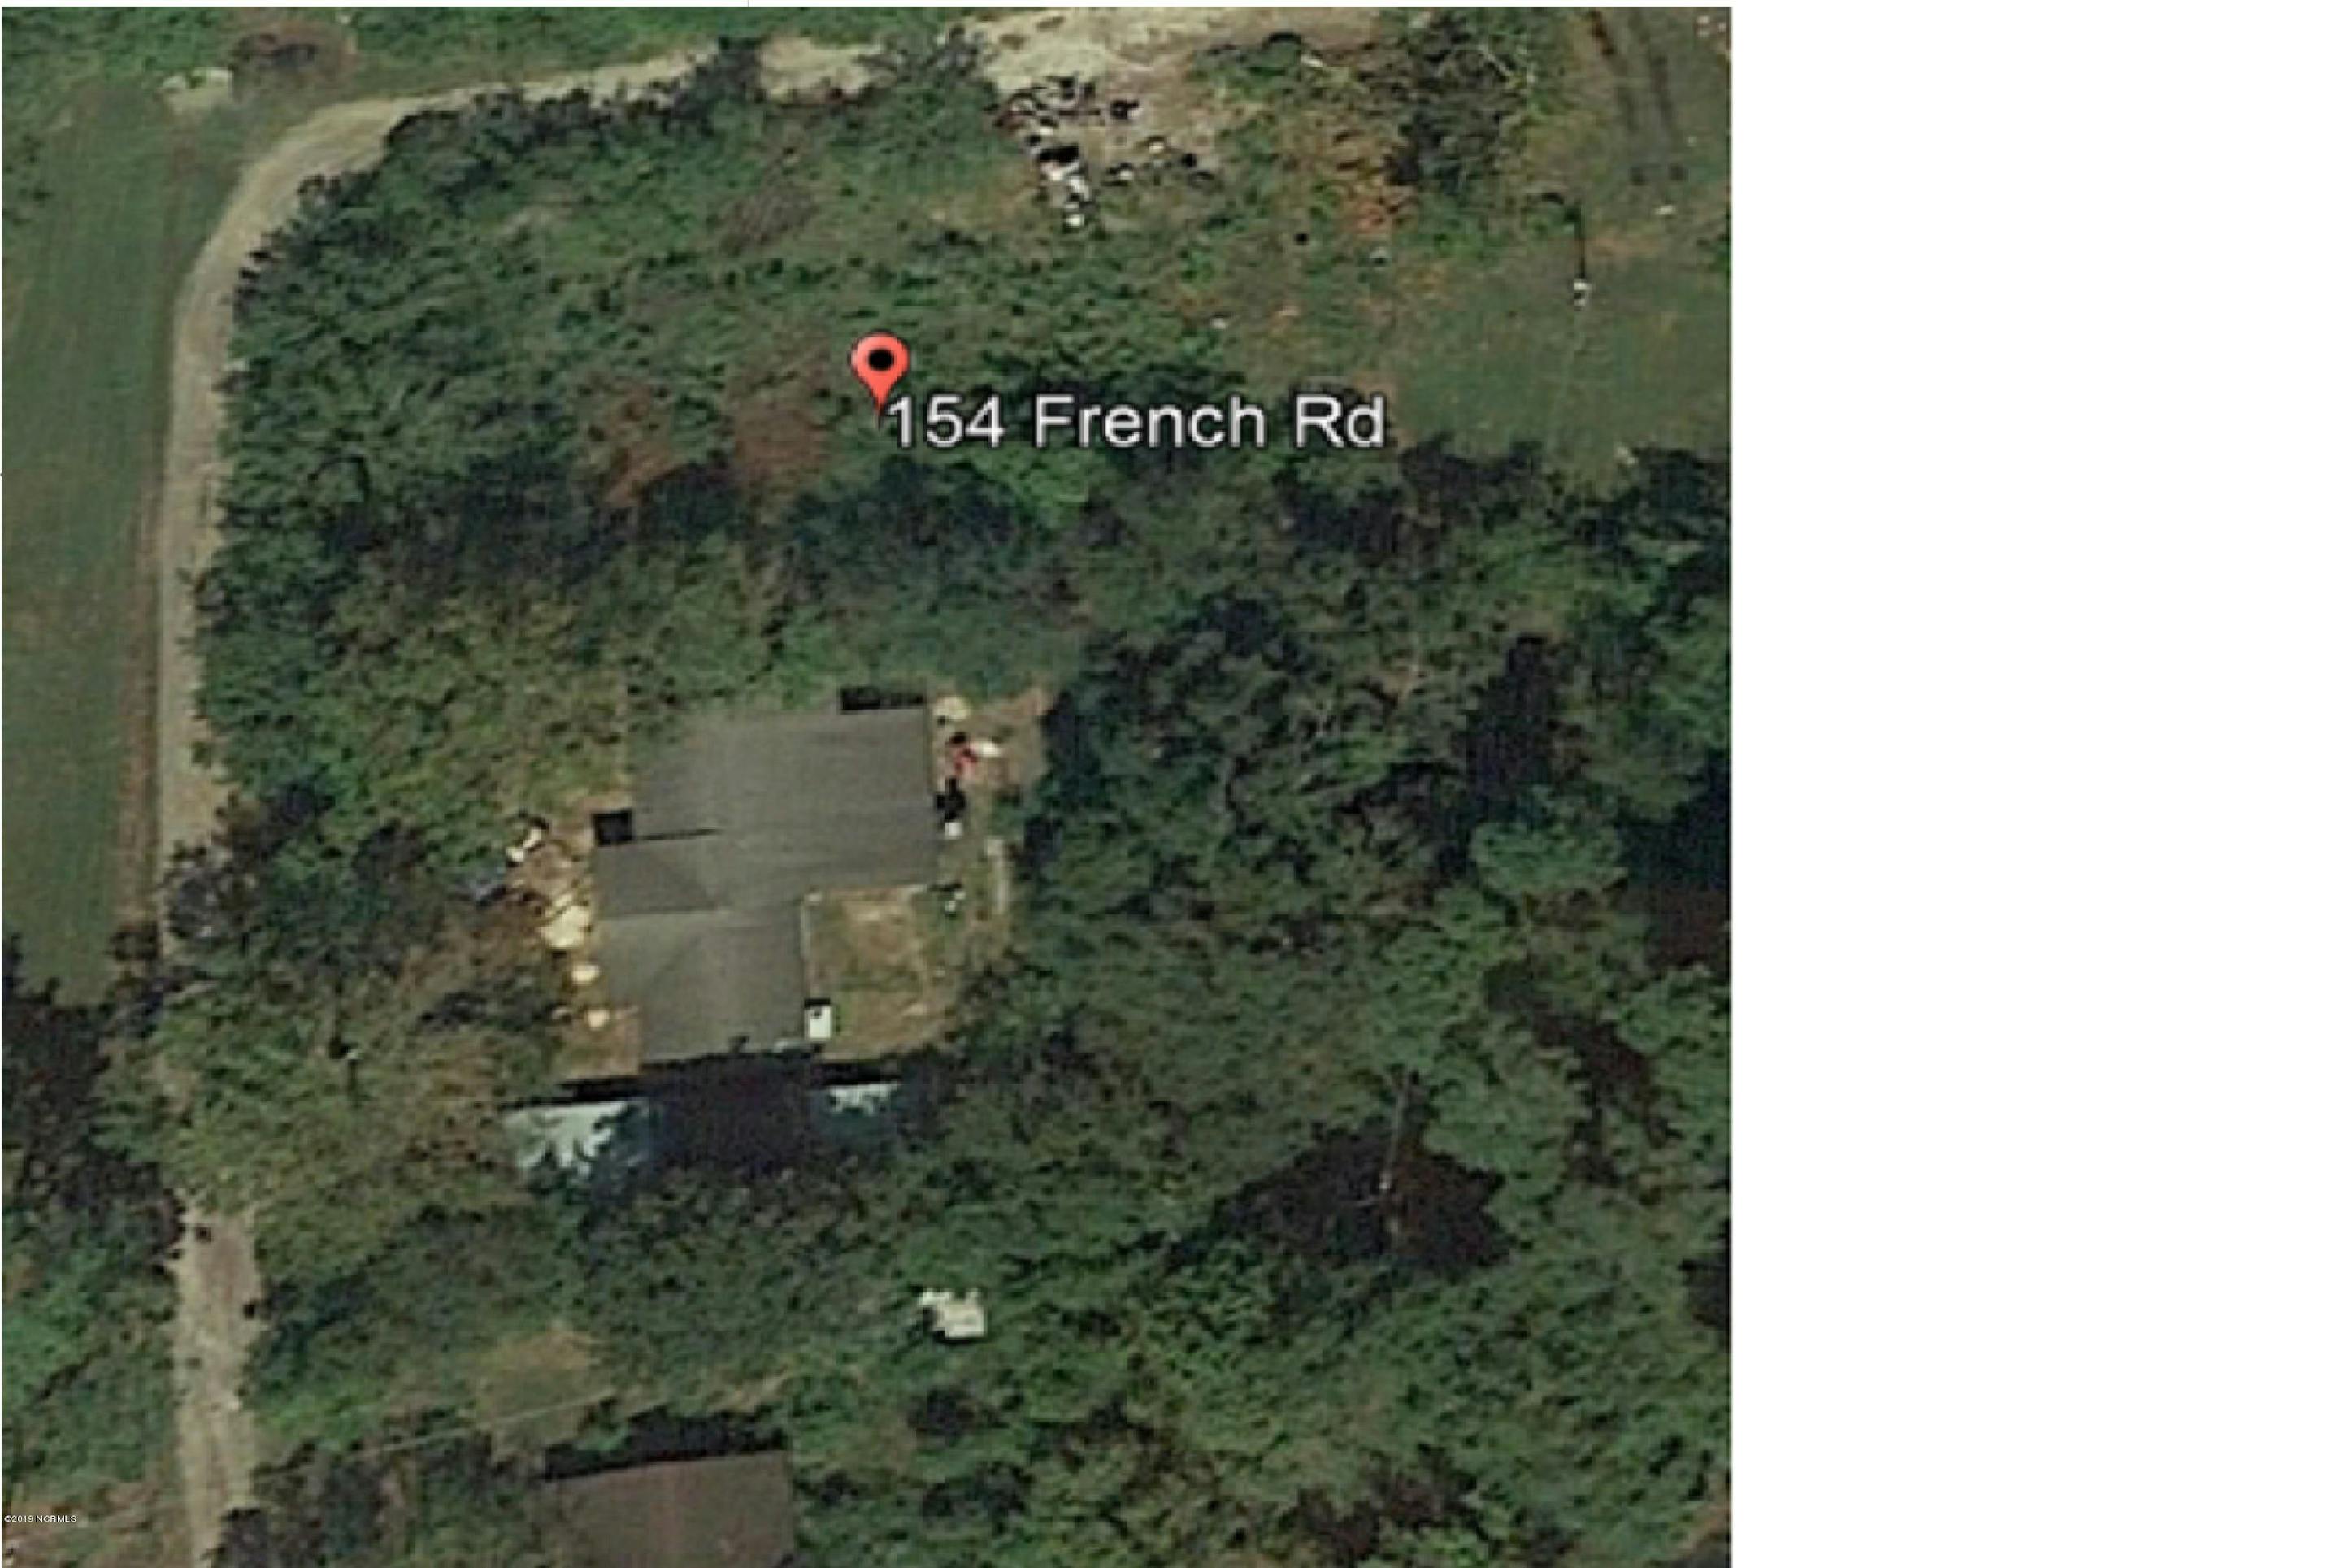 Google Earth 2